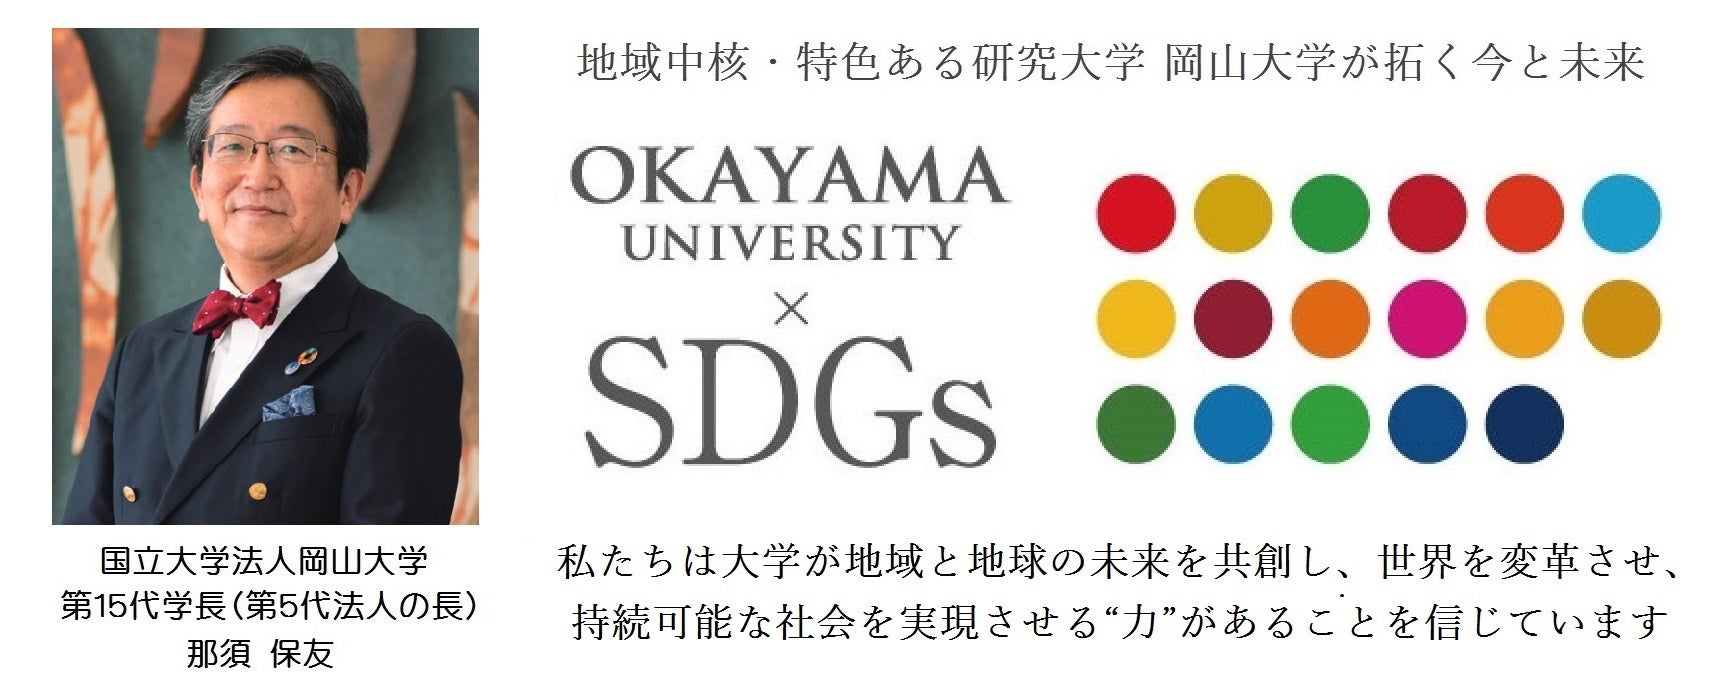 【岡山大学】岡山大学イメージムービーを公開しました